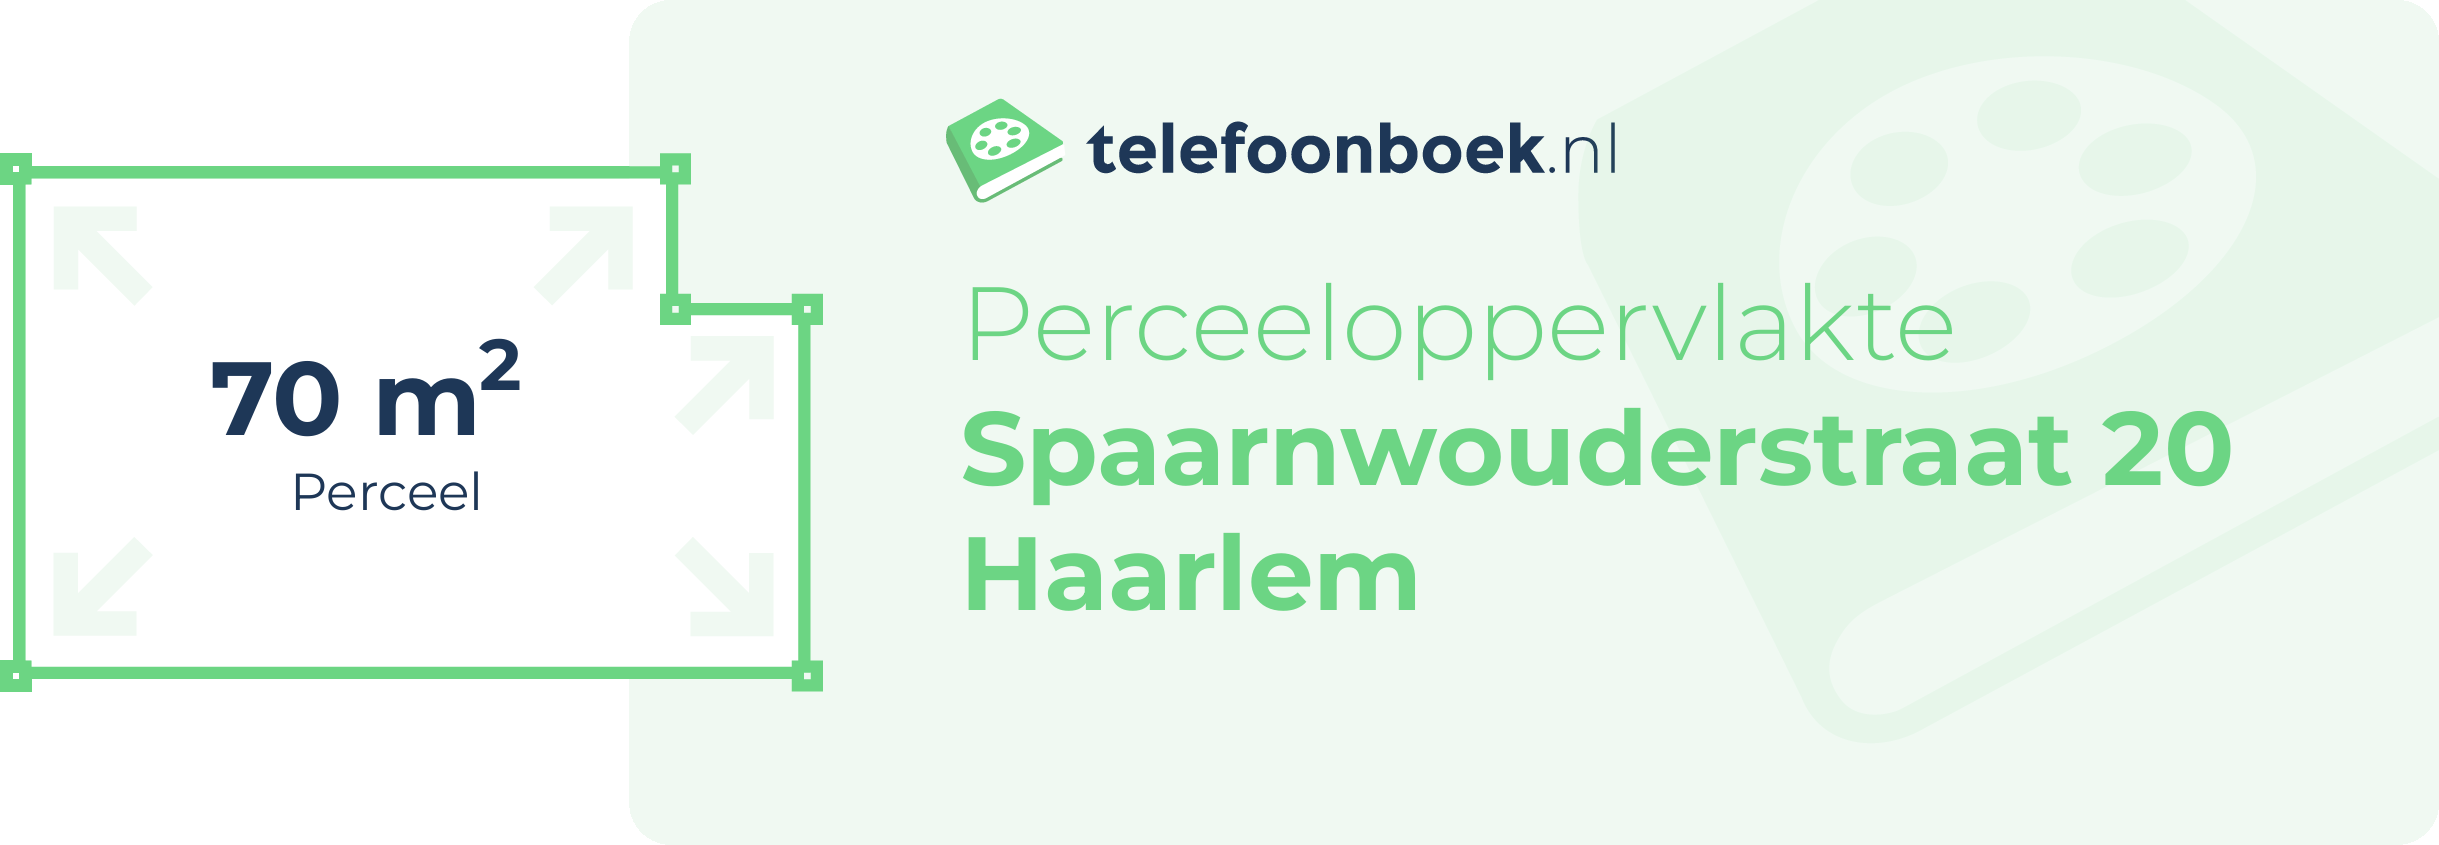 Perceeloppervlakte Spaarnwouderstraat 20 Haarlem